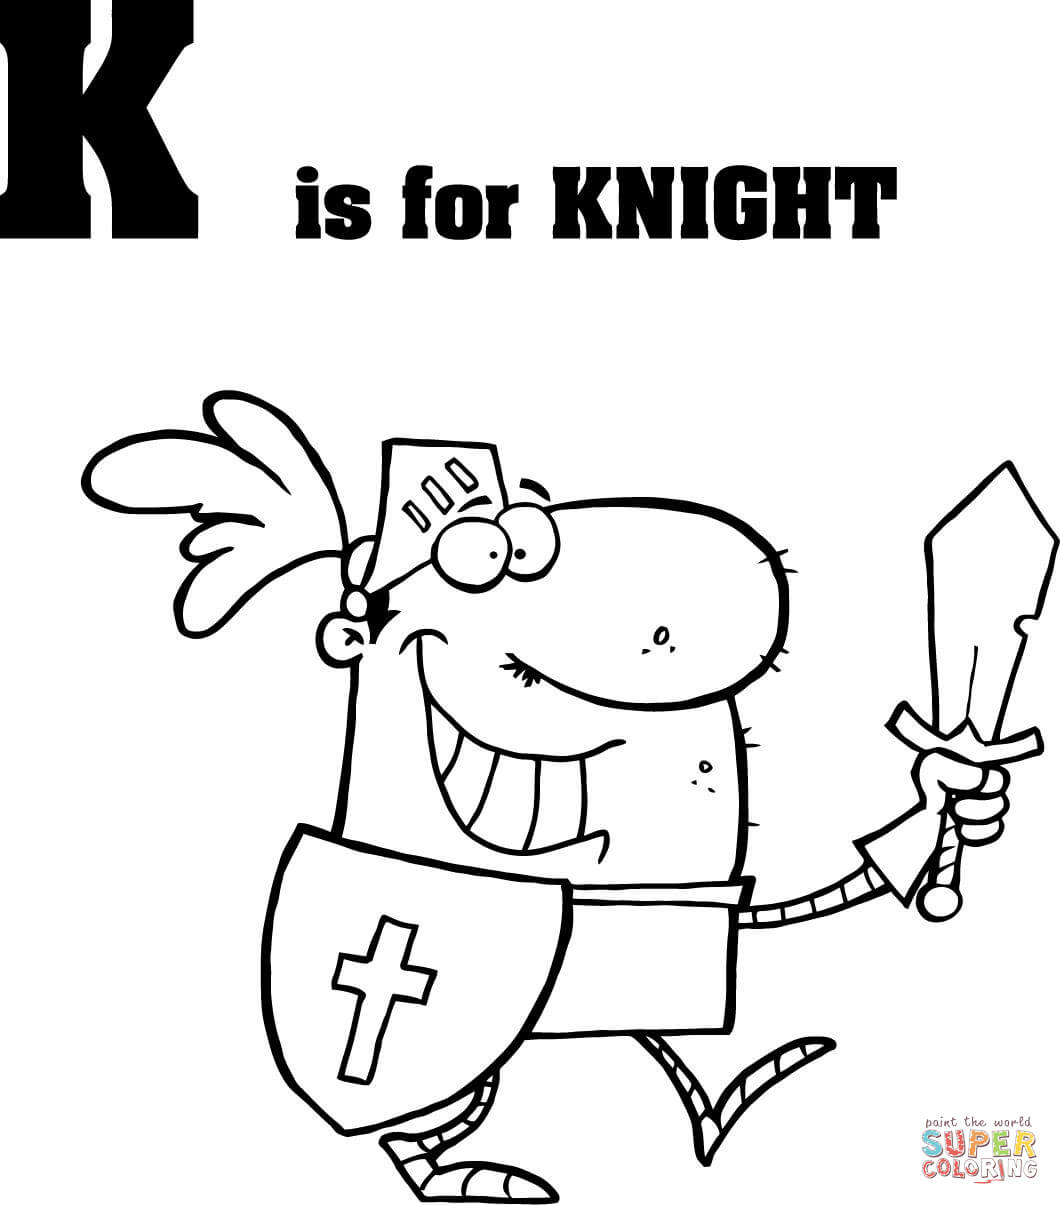 Buchstabe K steht für Ritter aus Buchstabe K